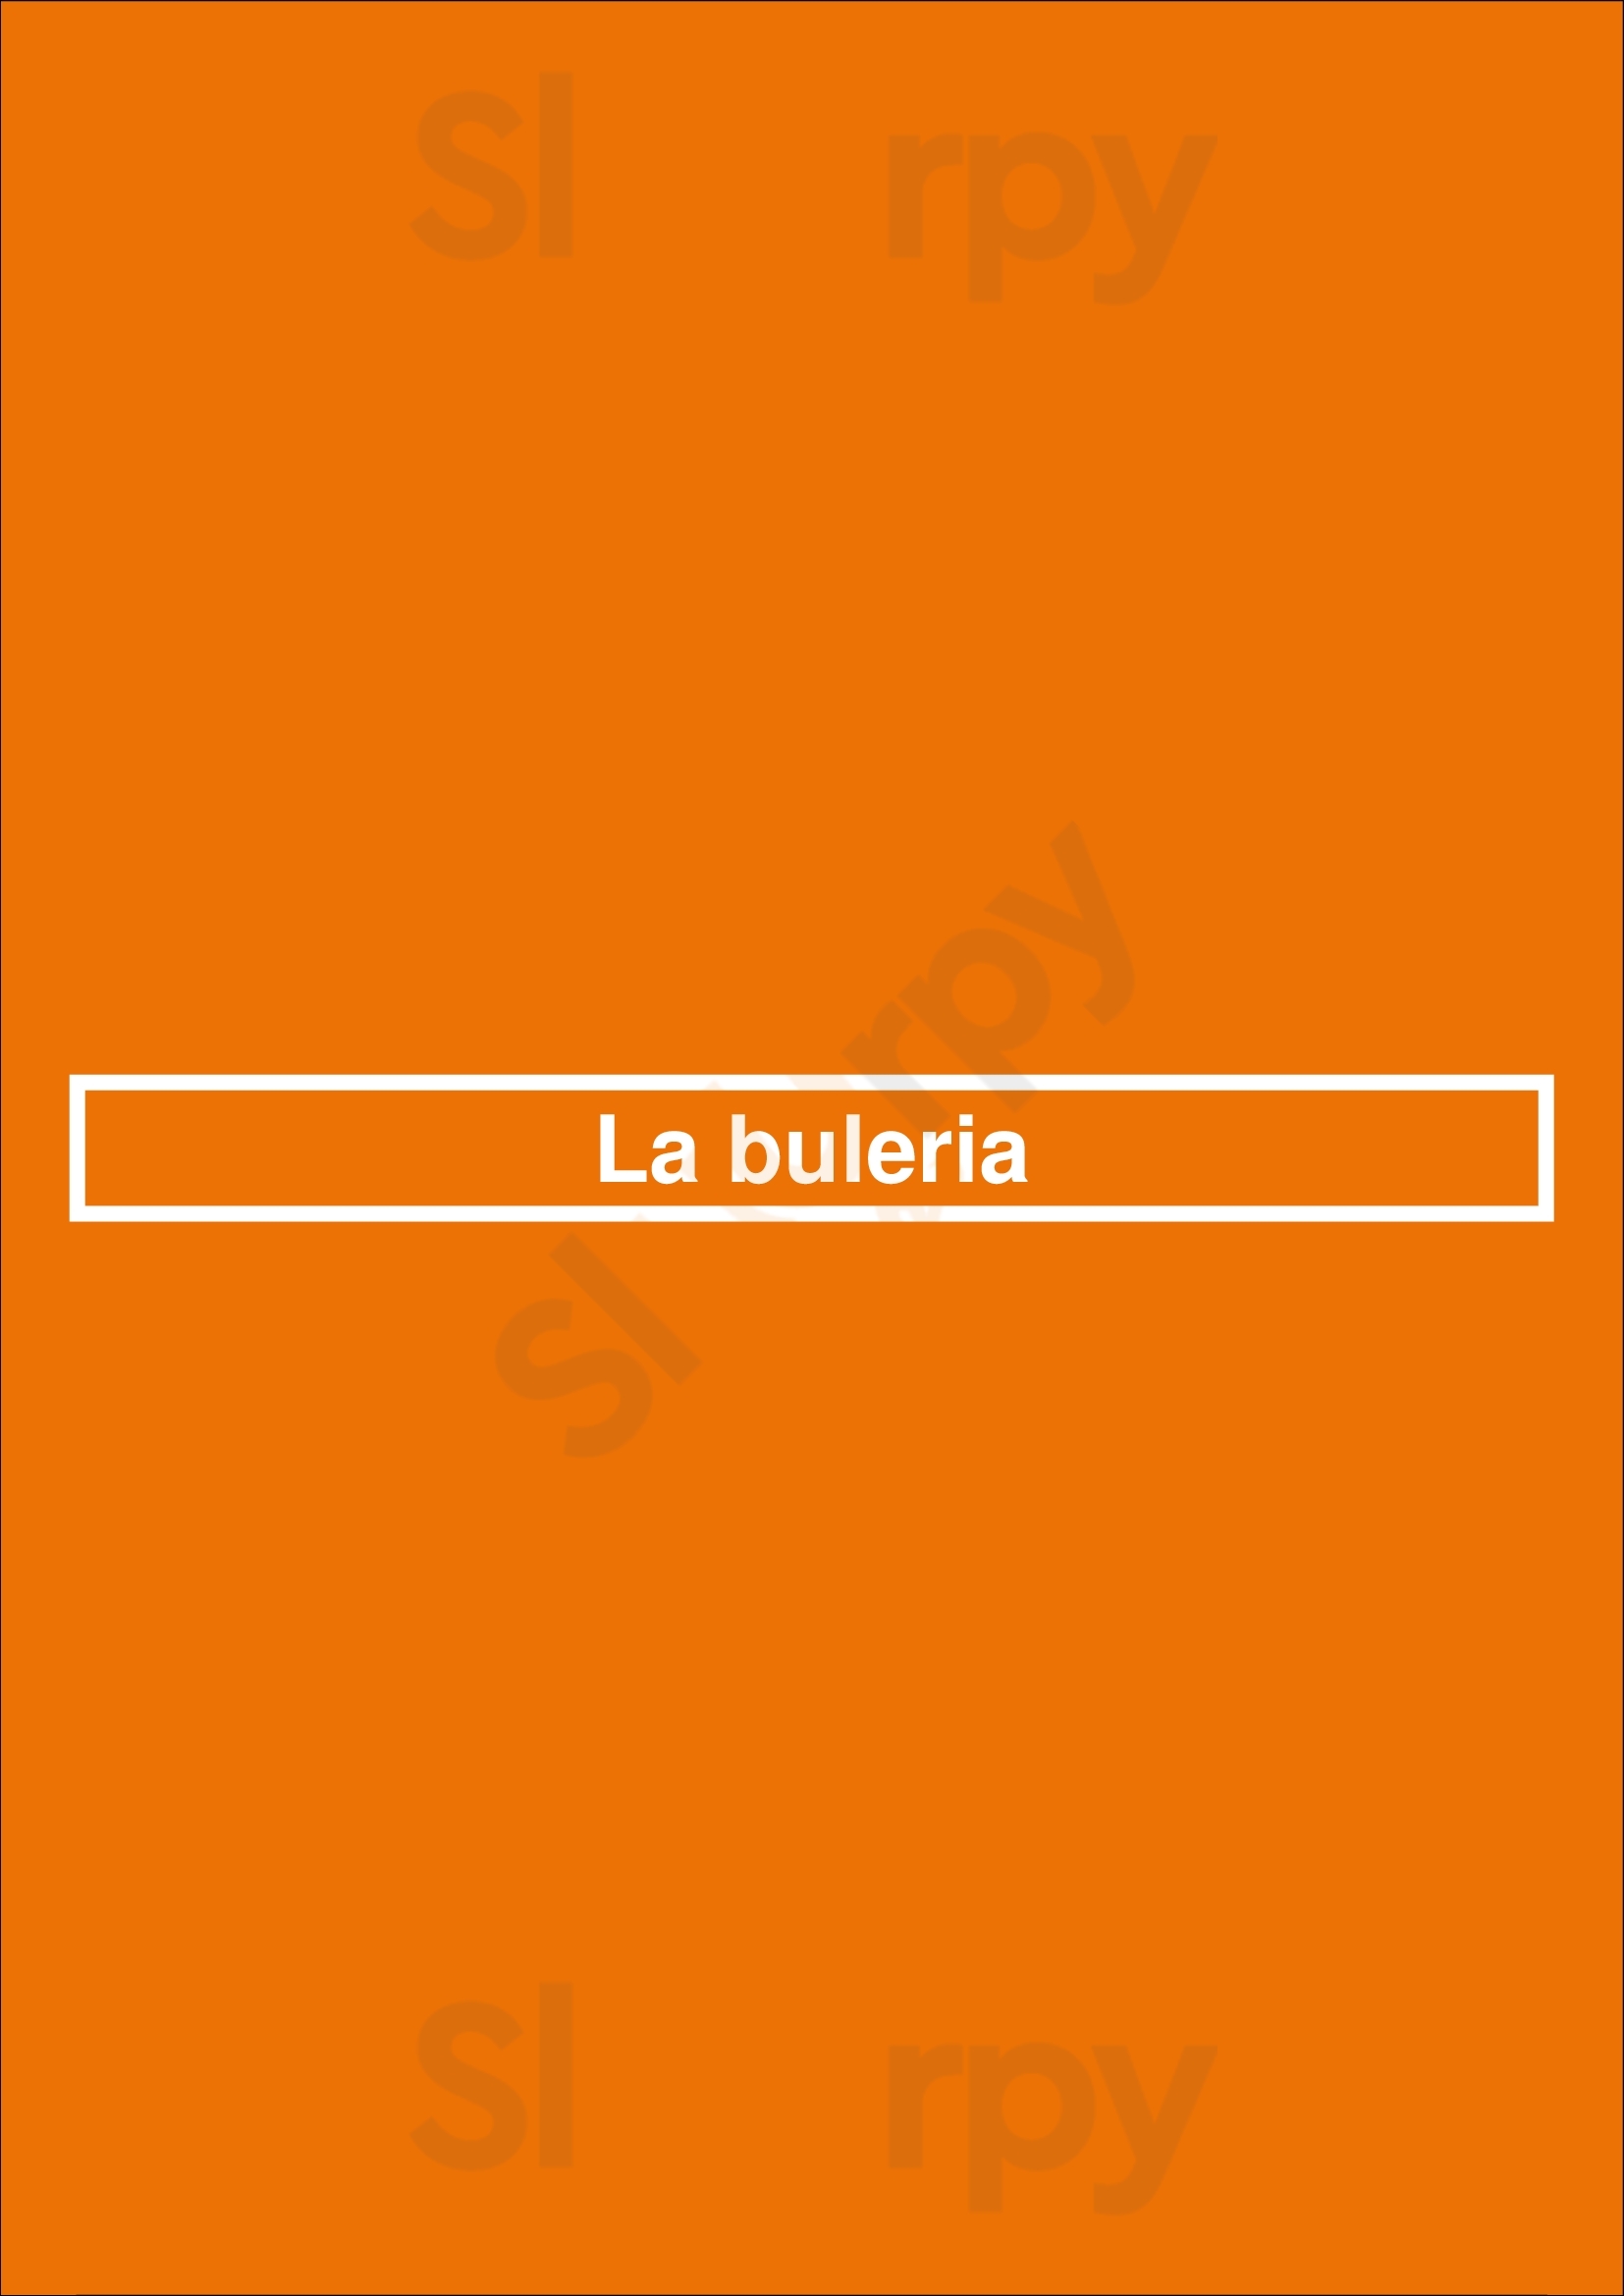 La Bulería Valencia Menu - 1